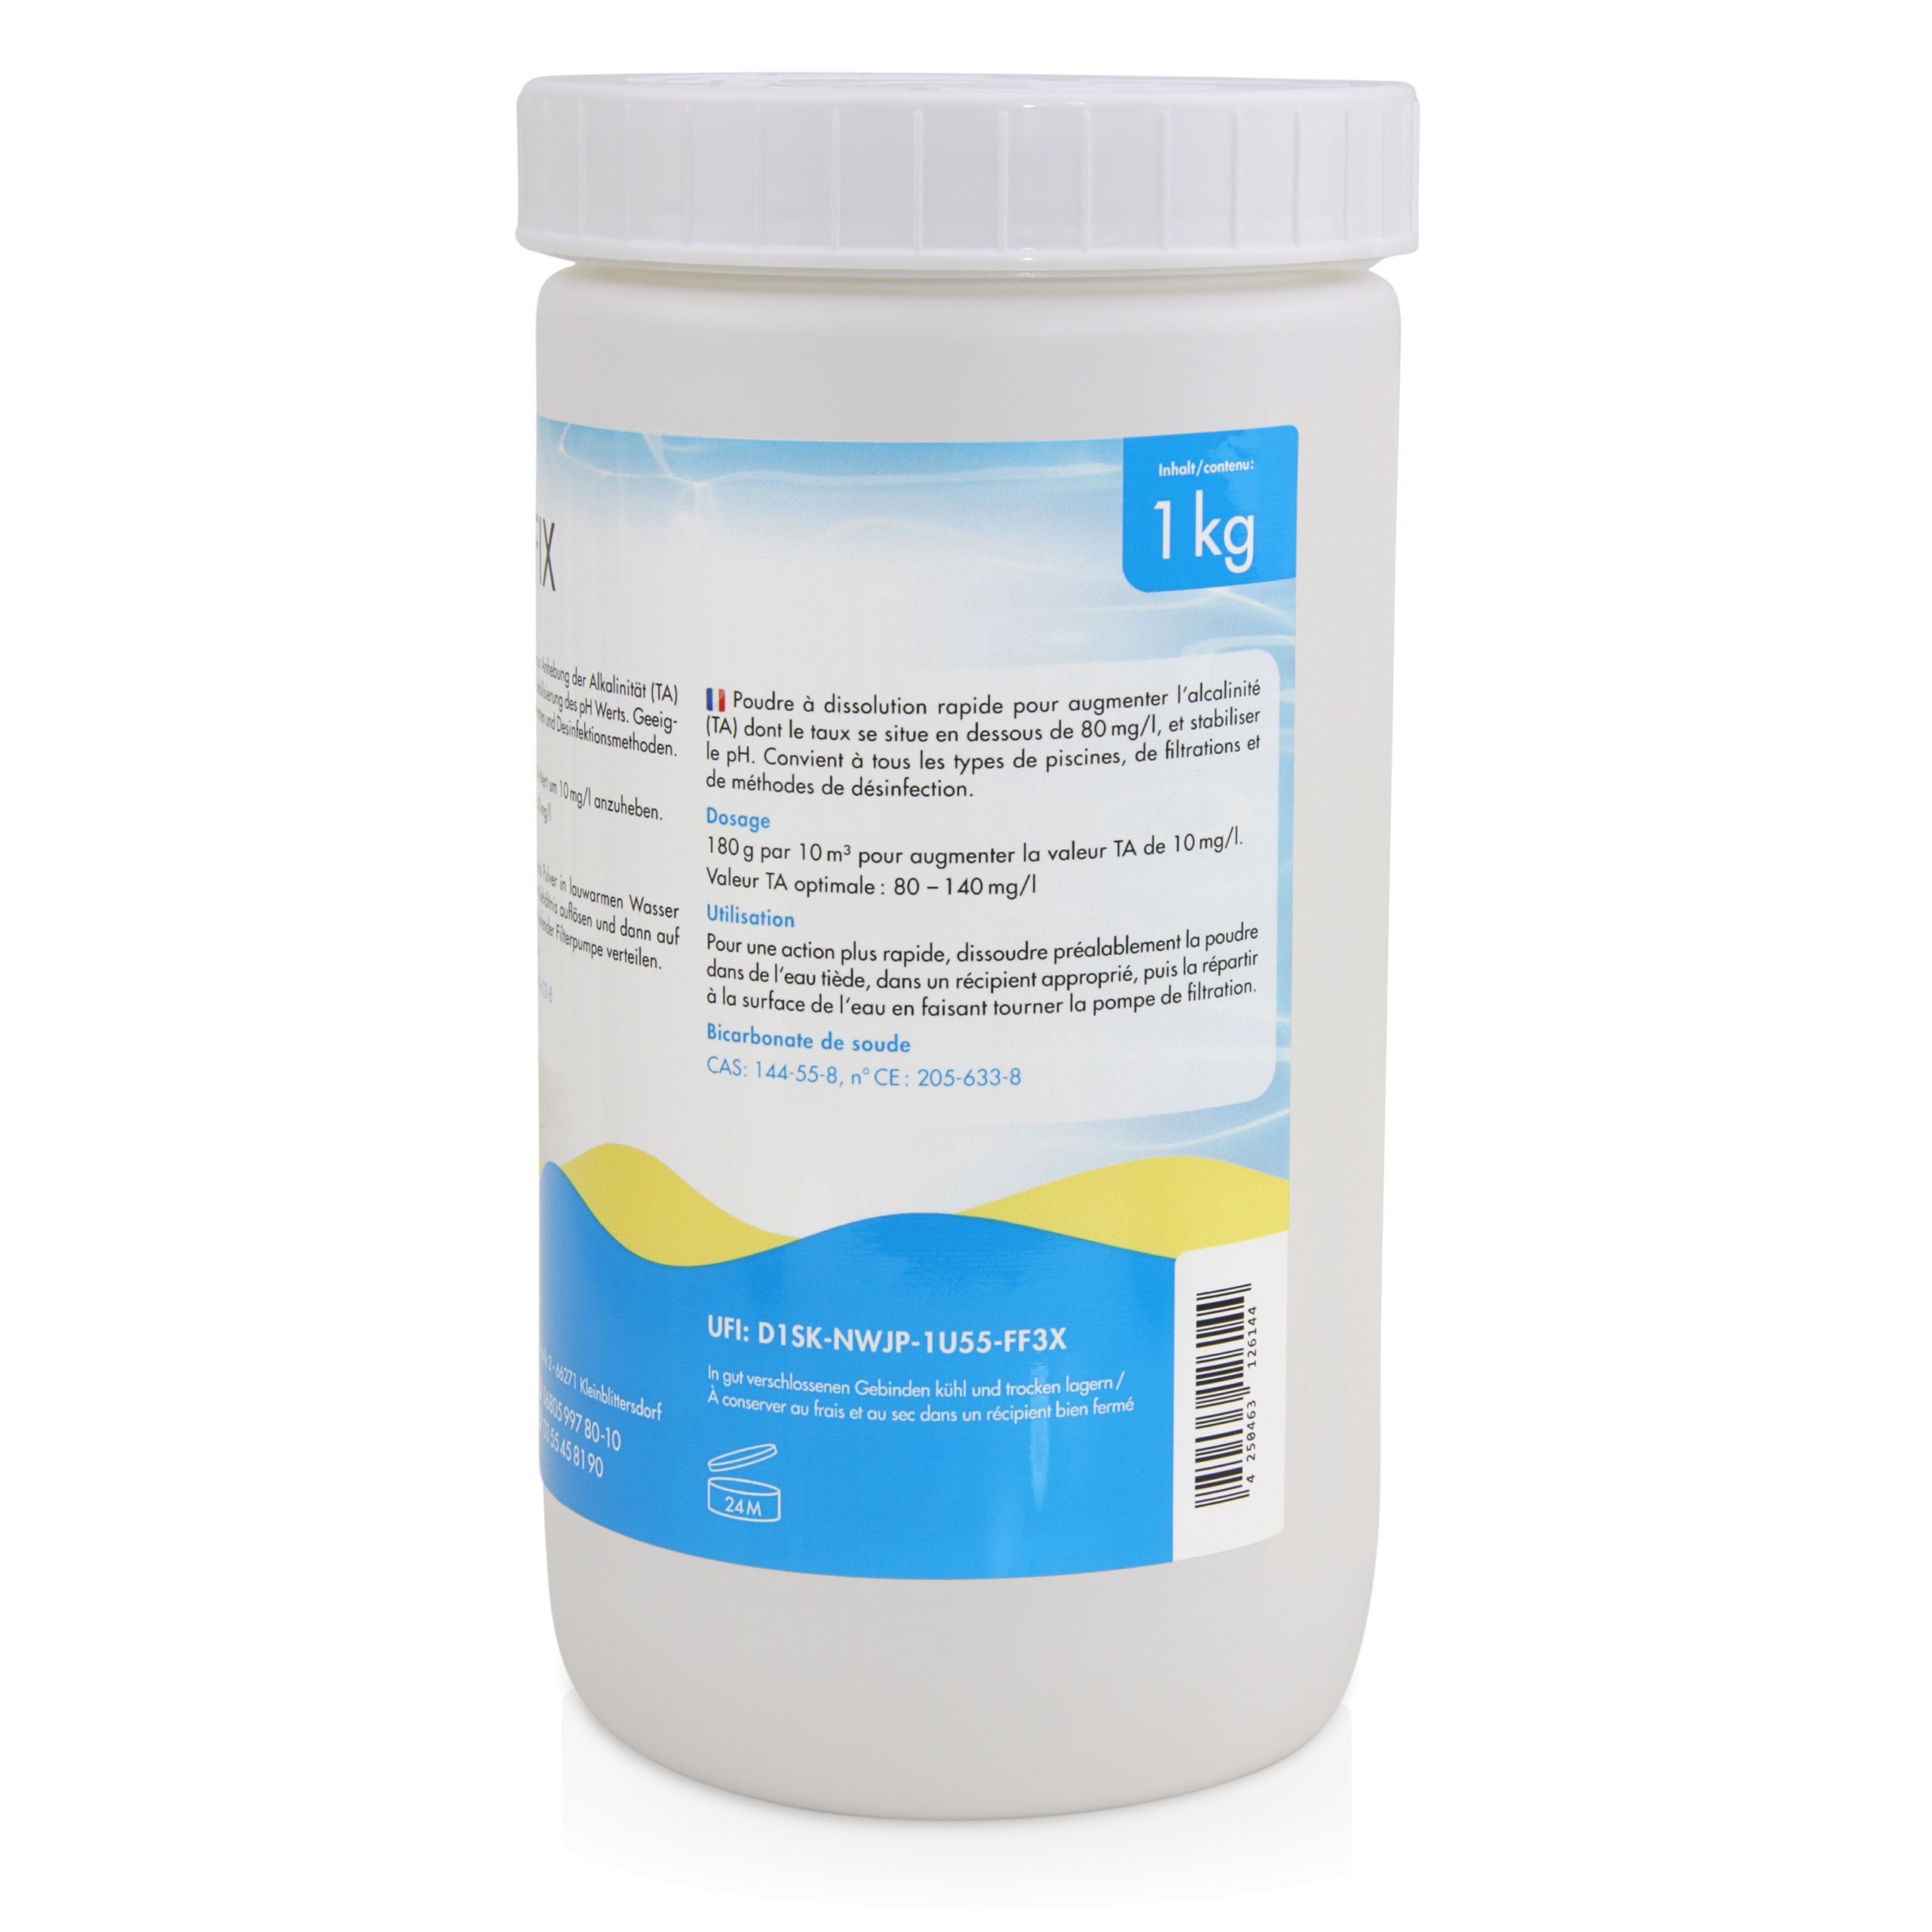 1 kg BAYZID®  Alkafix zur Anhebung der Alkalinität (TA)